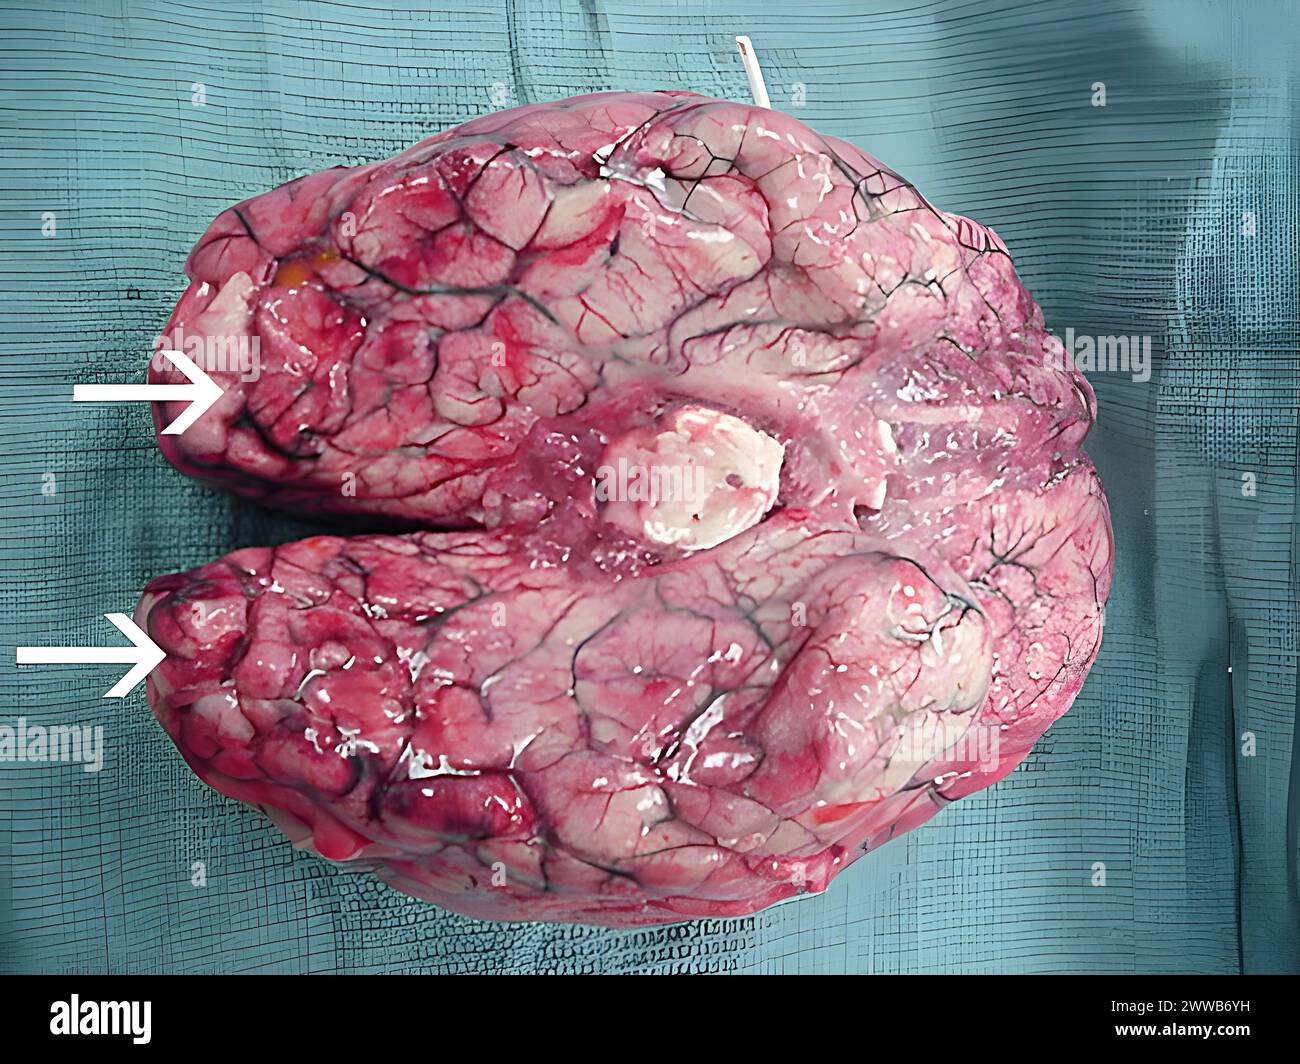 Ausgedehnte Blutungen und Nekrosen liegen im Gehirn vor, vor allem in der Frontalrinde. Stockfoto